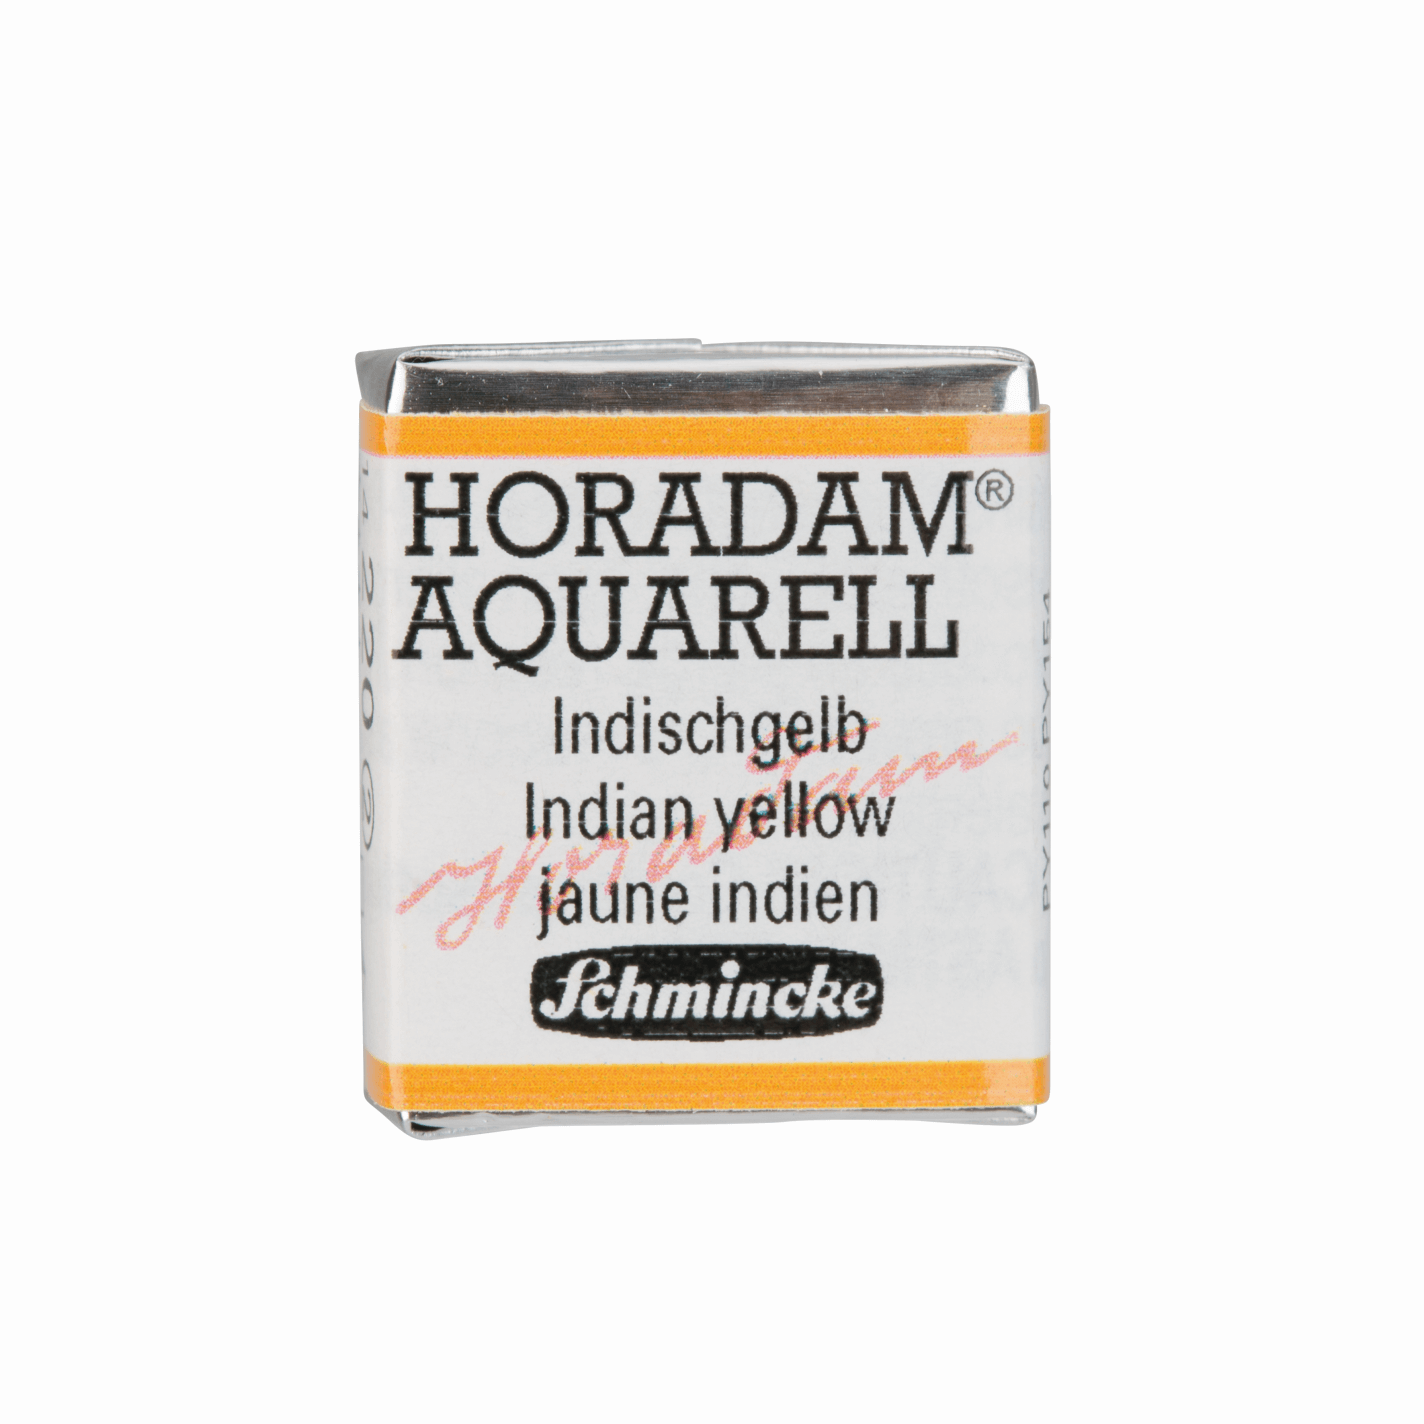 Schmincke Horadam Aquarell pans 1/2 pan Indian Yellow